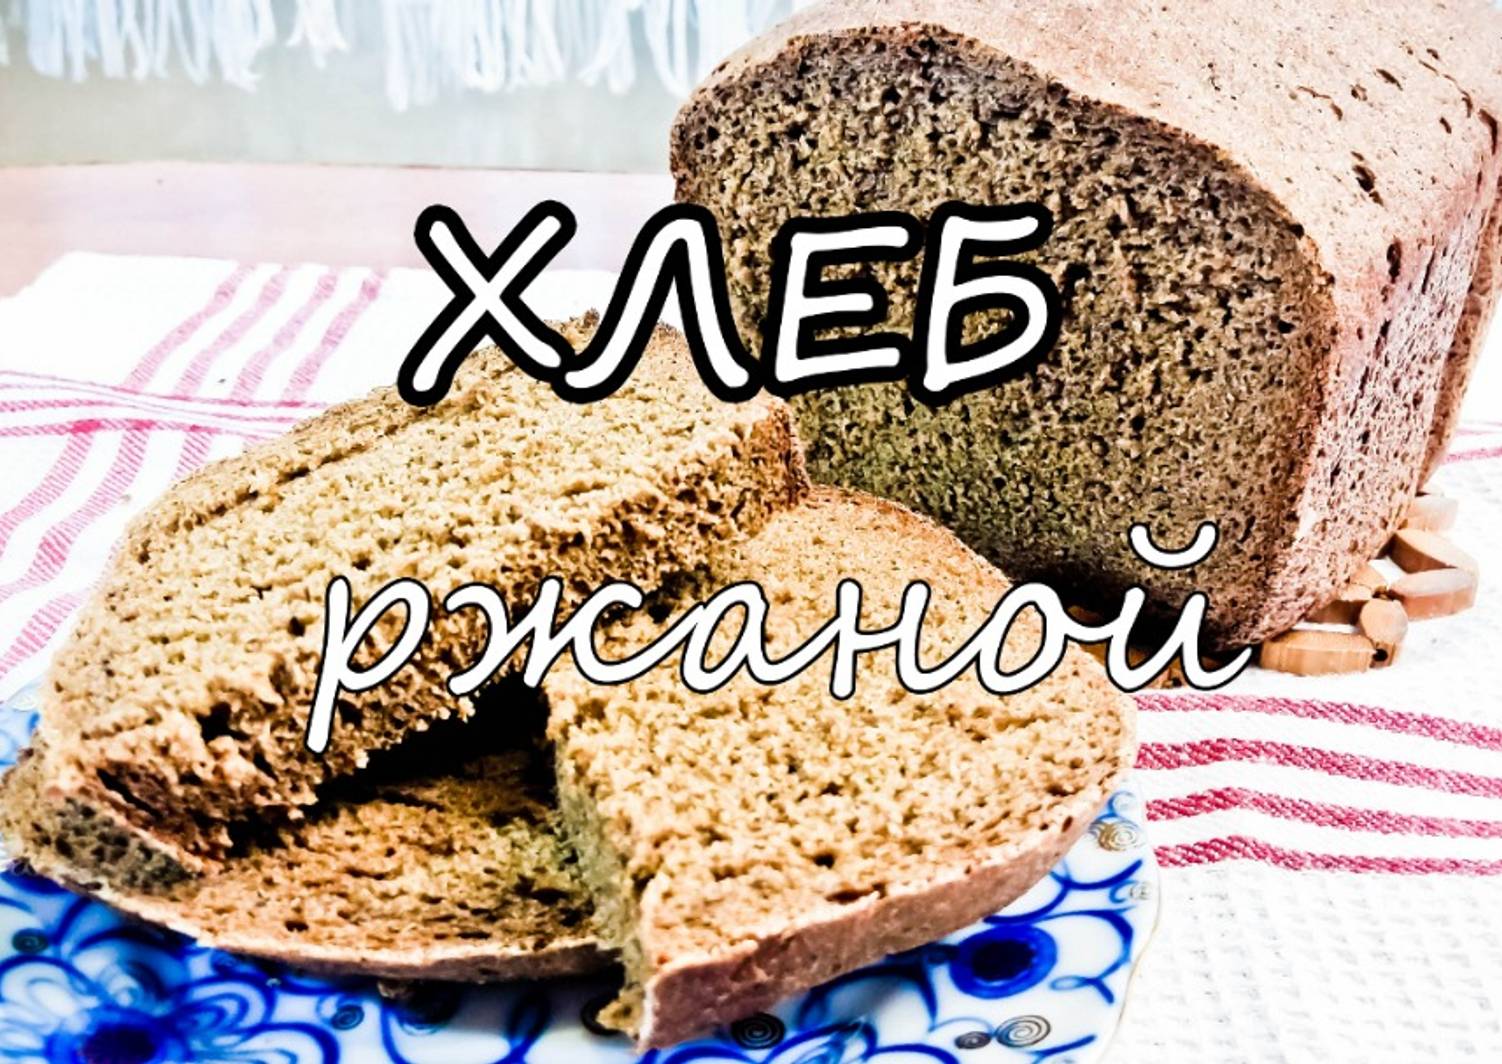 Рецепт хлеба панасоник 2501. SD 2501 ржаной хлеб. Хлеб из ржаной муки в хлебопечке Панасоник 2501. Заварной хлеб Панасоник. Заварной хлеб в хлебопечке Панасоник.